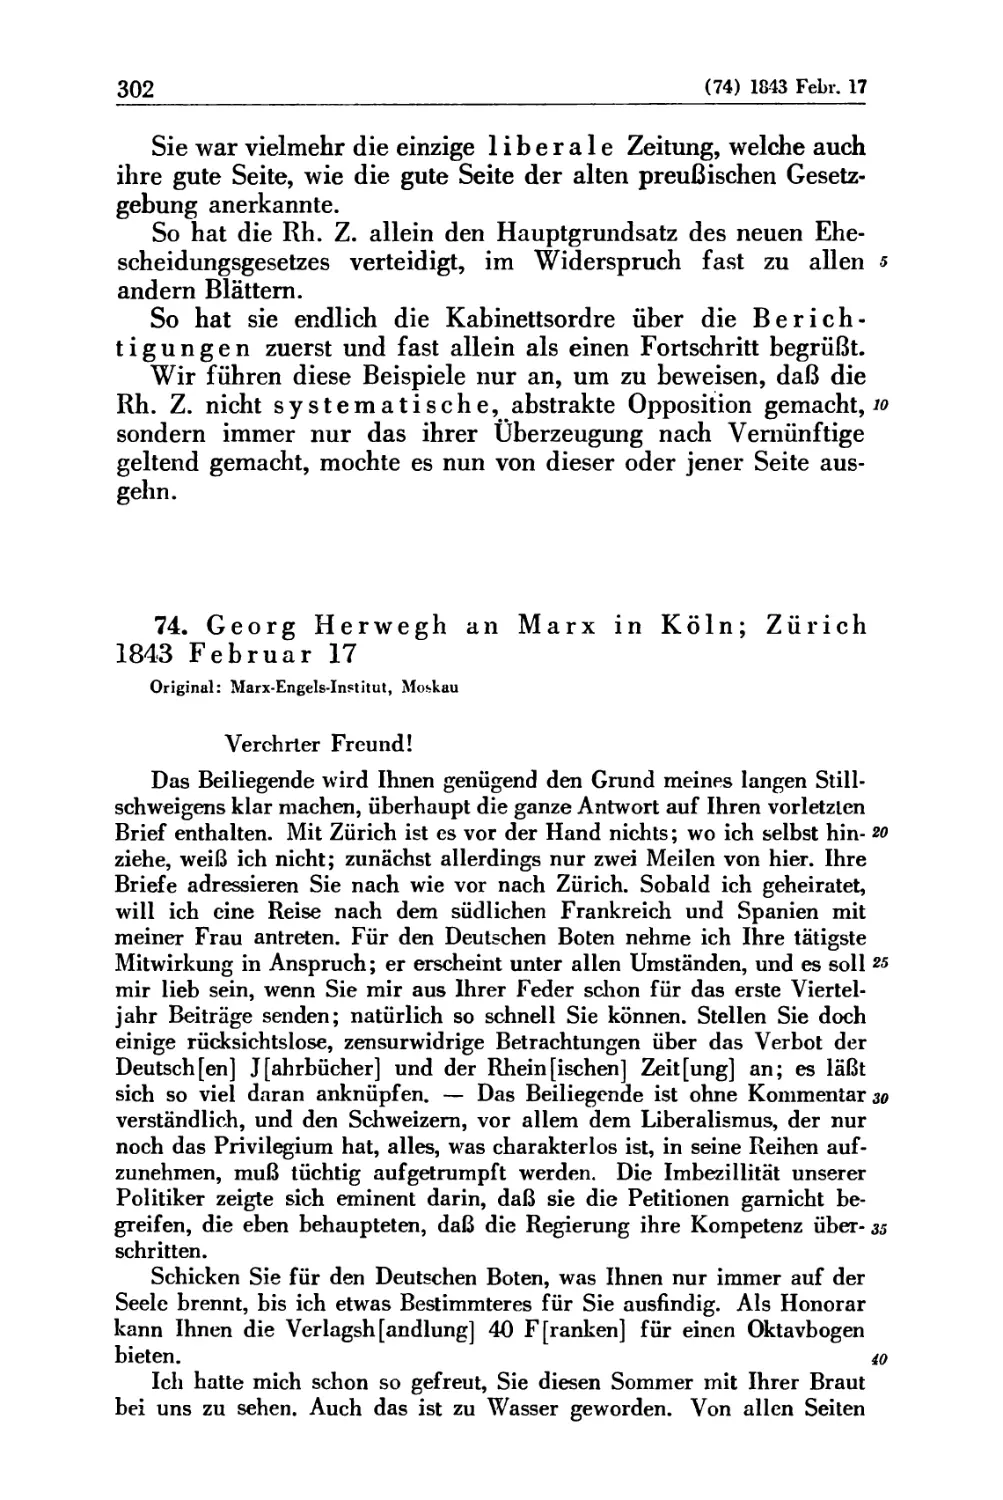 74. Georg Herwegh an Marx in Köln; Zürich 1843 Februar 17